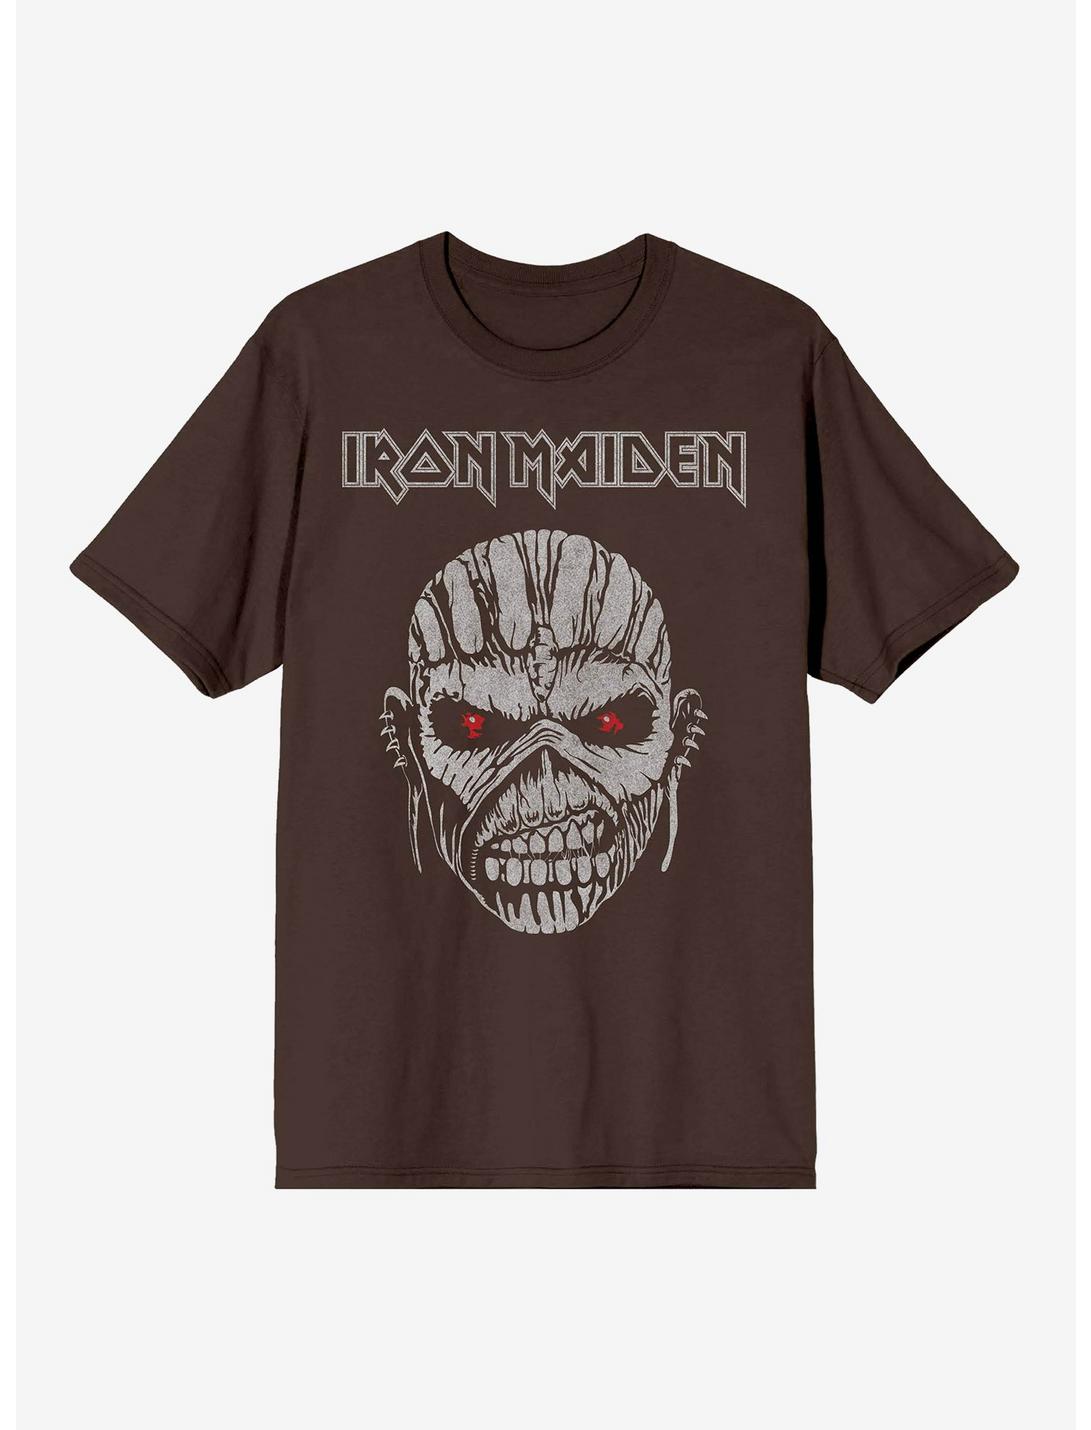 Iron Maiden Eddie Face Boyfriend Fit Girls T-Shirt, DARK CHOCOLATE, hi-res